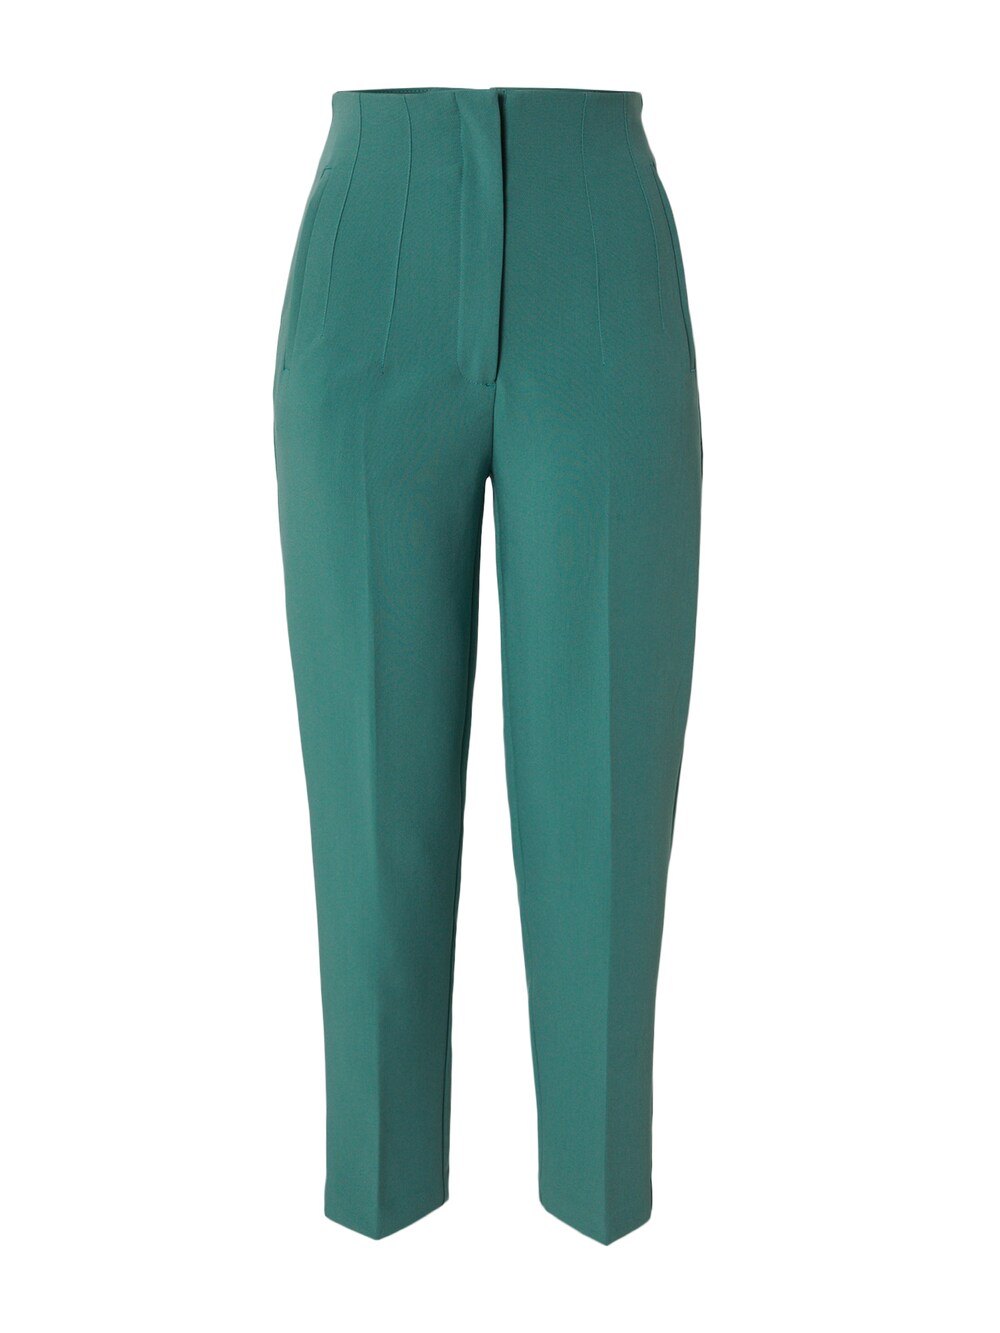 Обычные плиссированные брюки Edited Charlotta, зеленый обычные плиссированные брюки edited leona оливковый